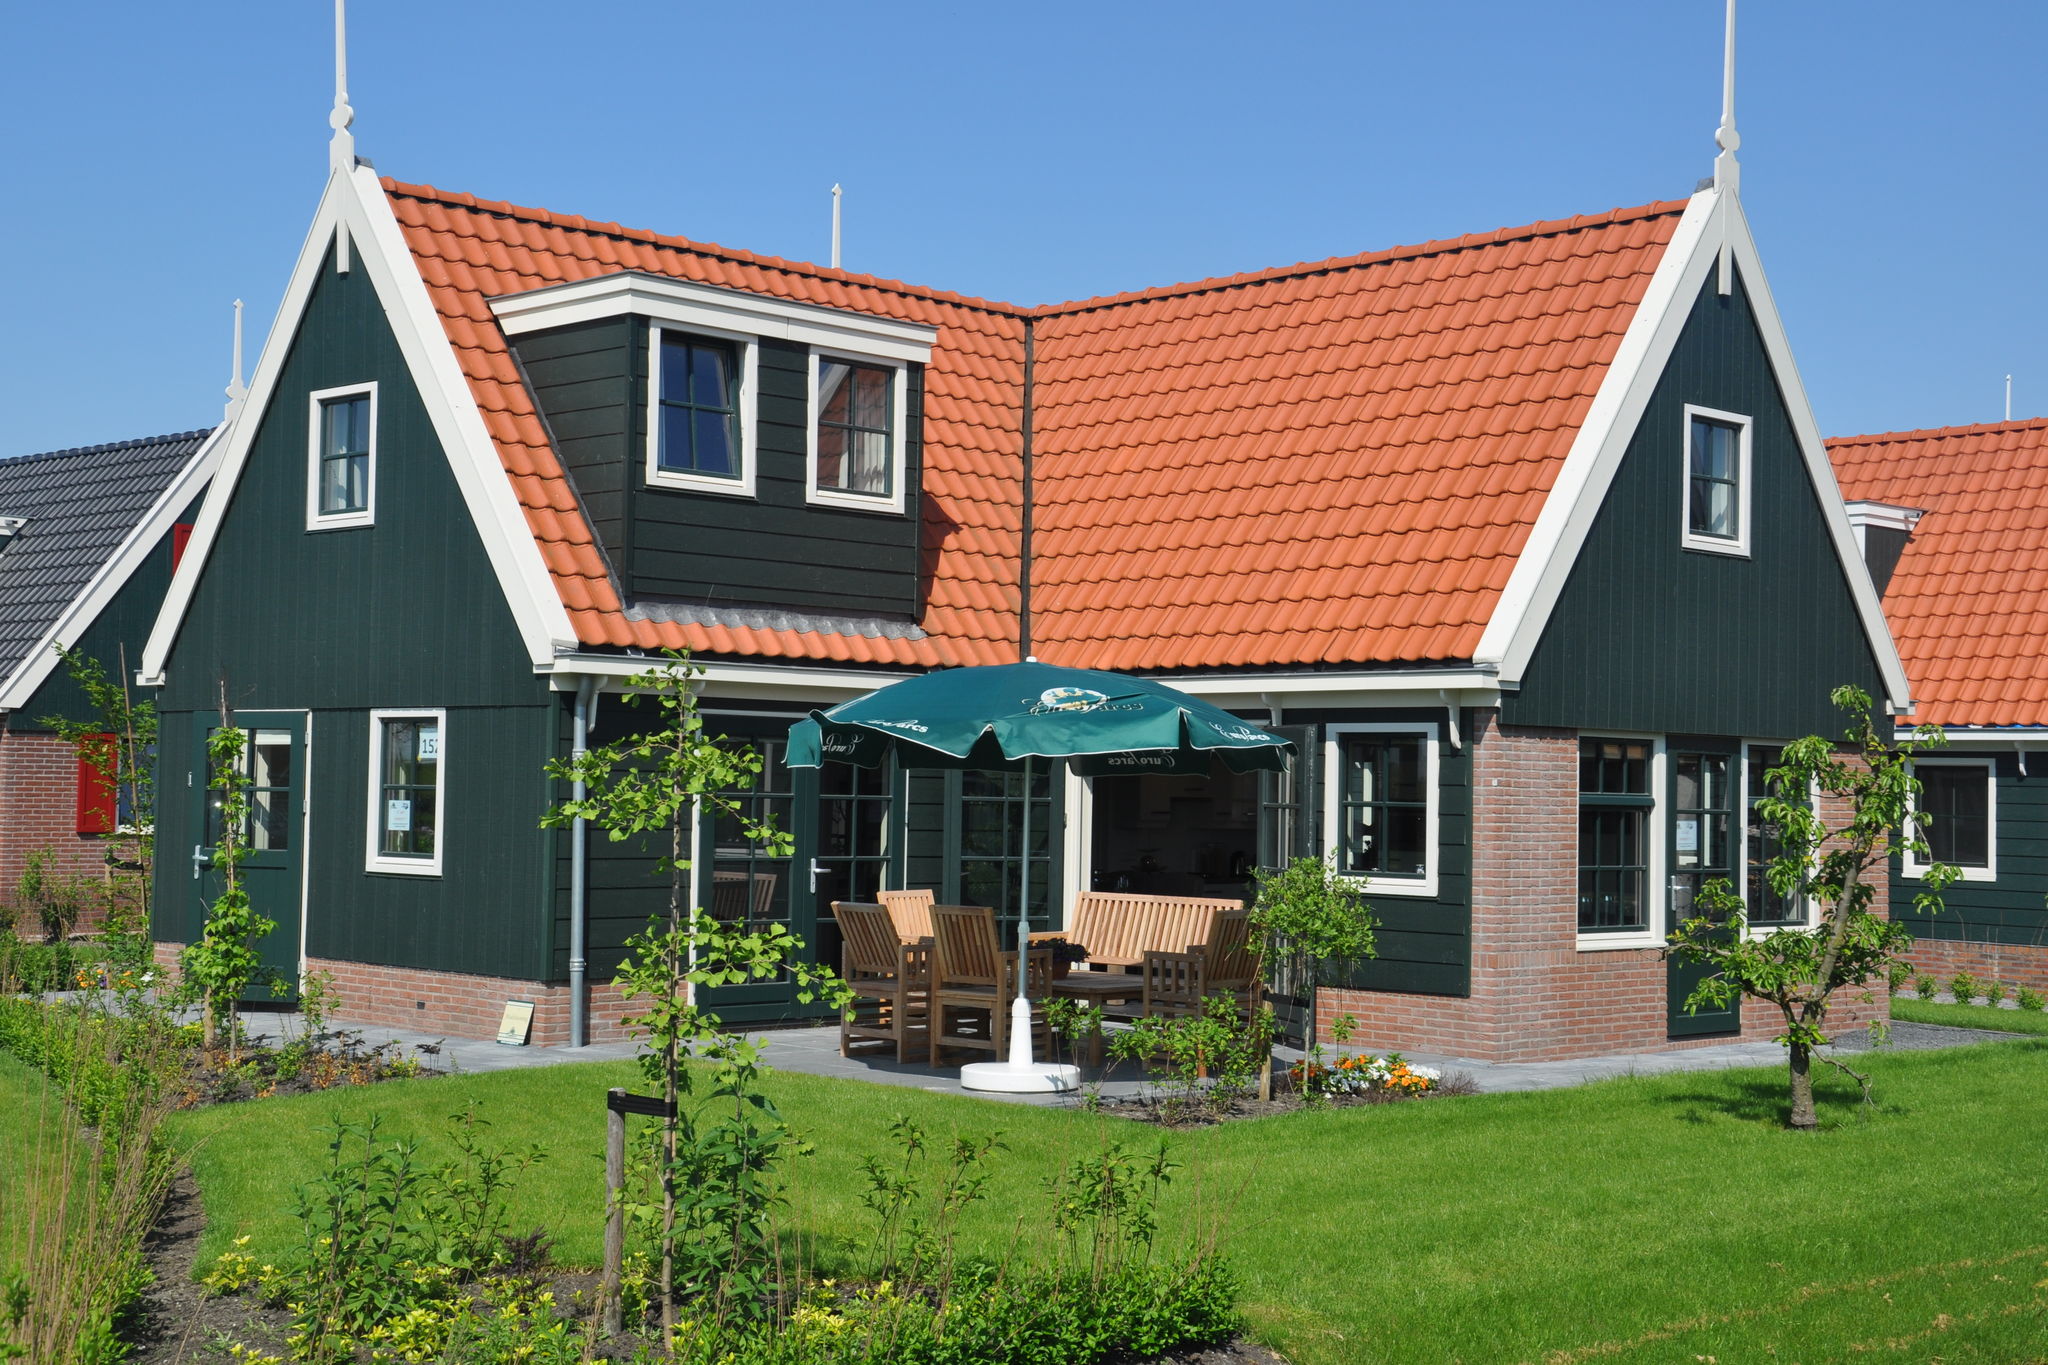 Holiday home in Zaanse style, 15 km from Alkmaar